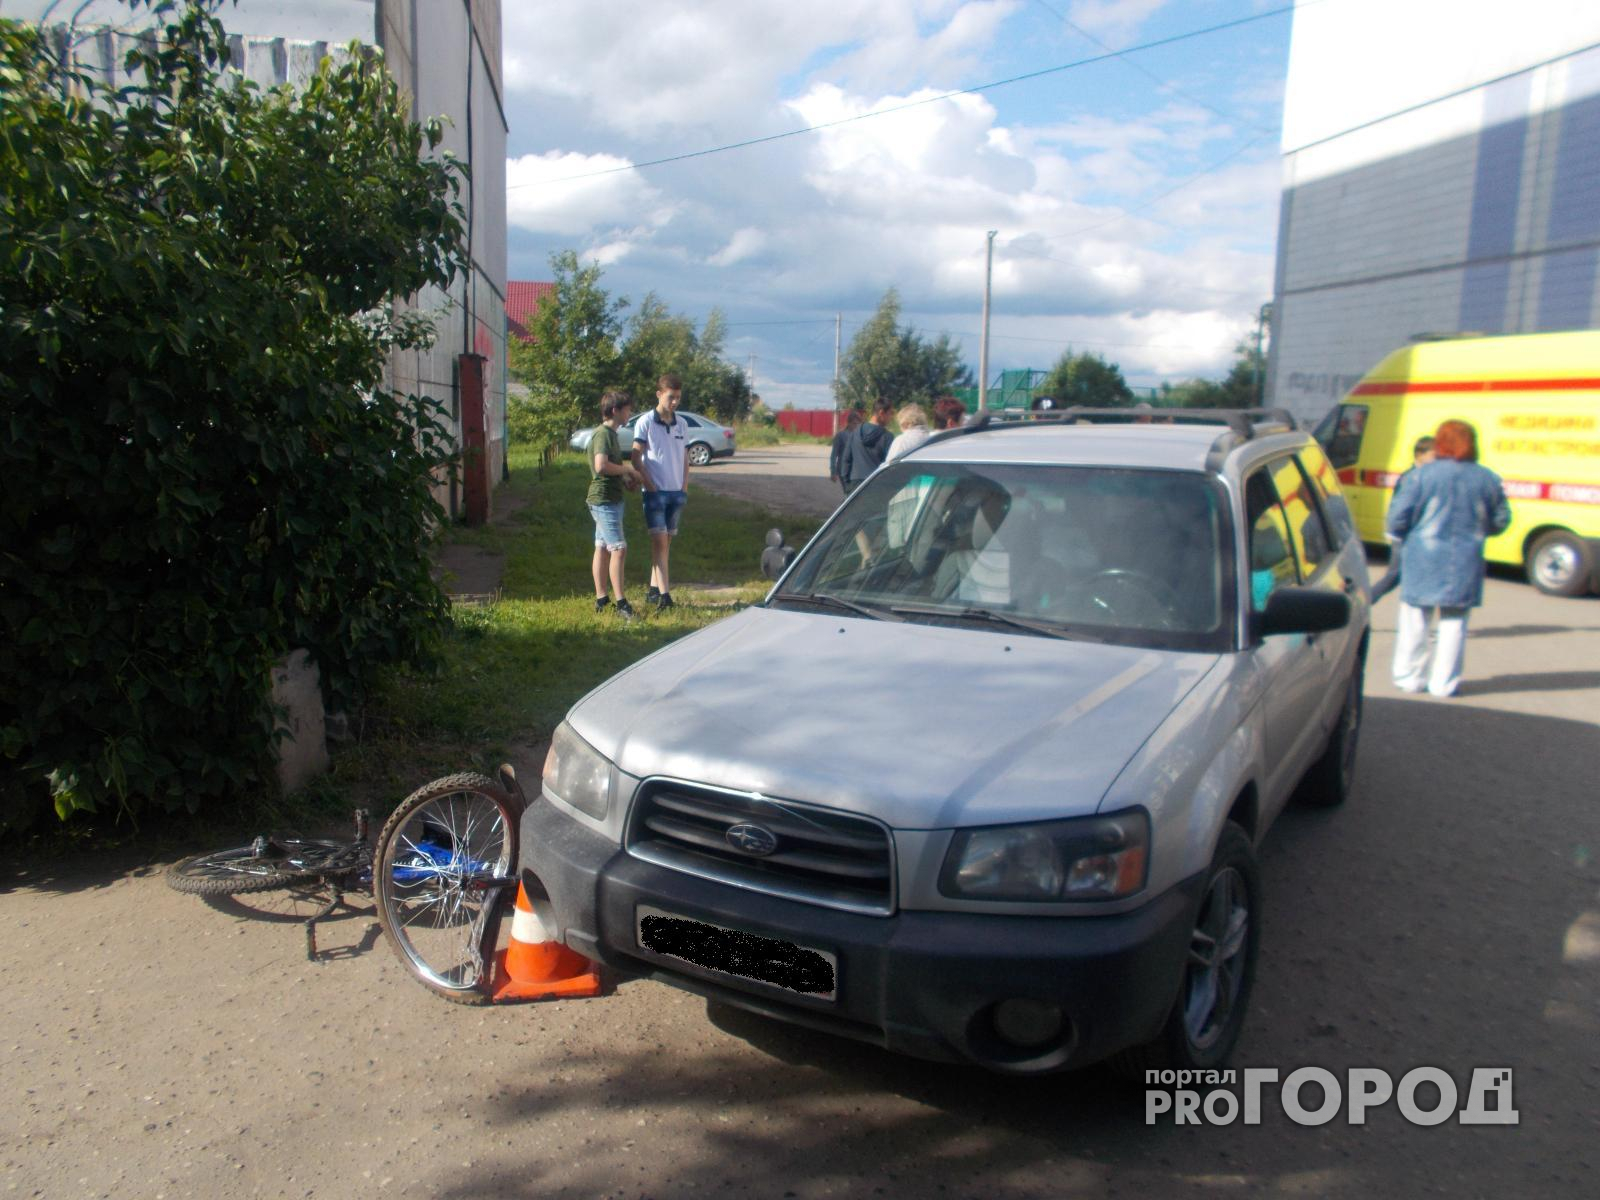 В Ярославле девятилетний велосипедист оказался под колесами автомобиля